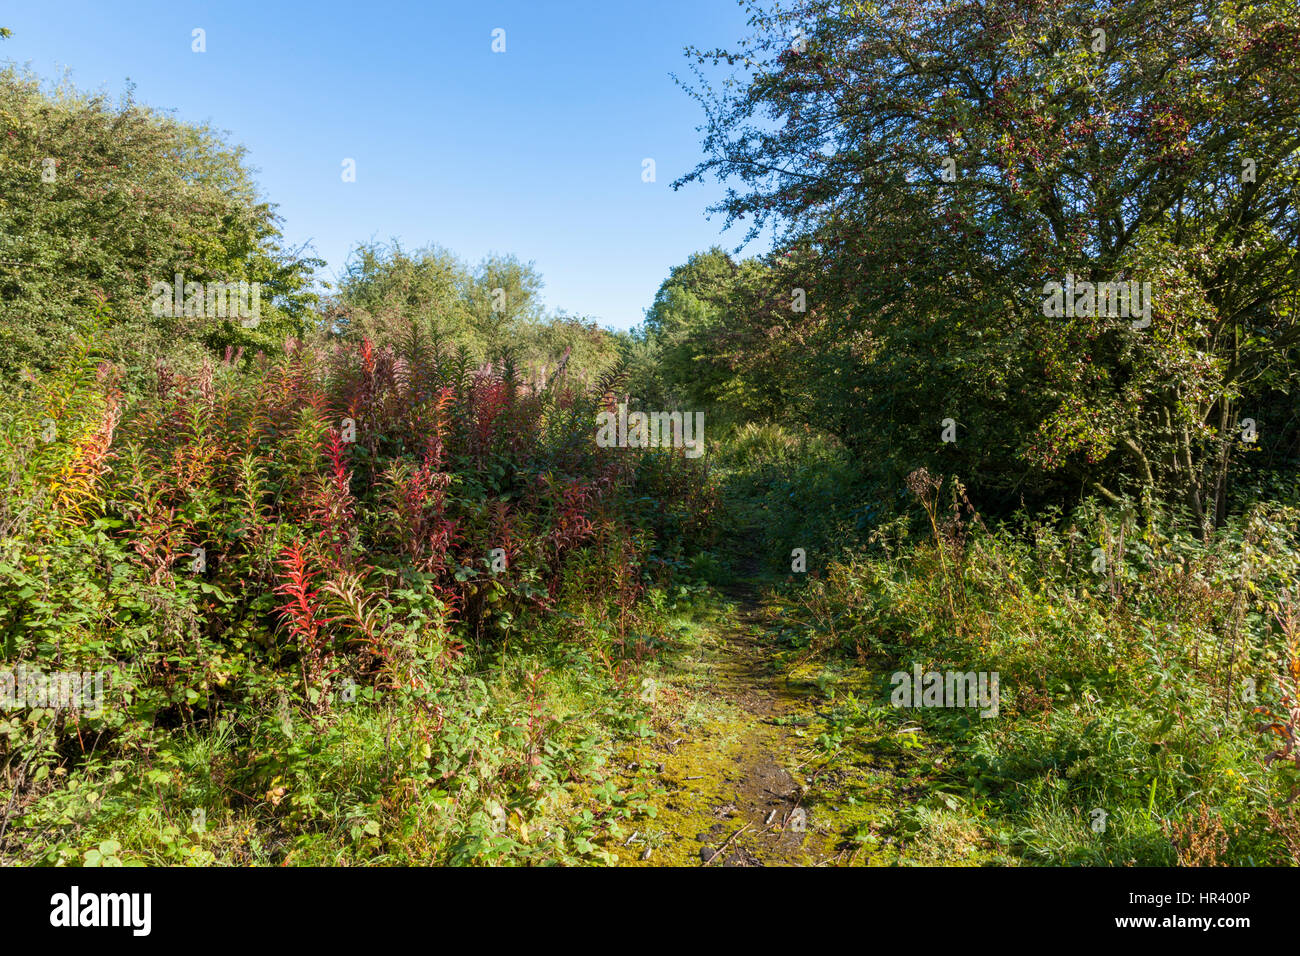 Overgrown path through bushes and trees on wasteland, Nottingham, England, UK Stock Photo